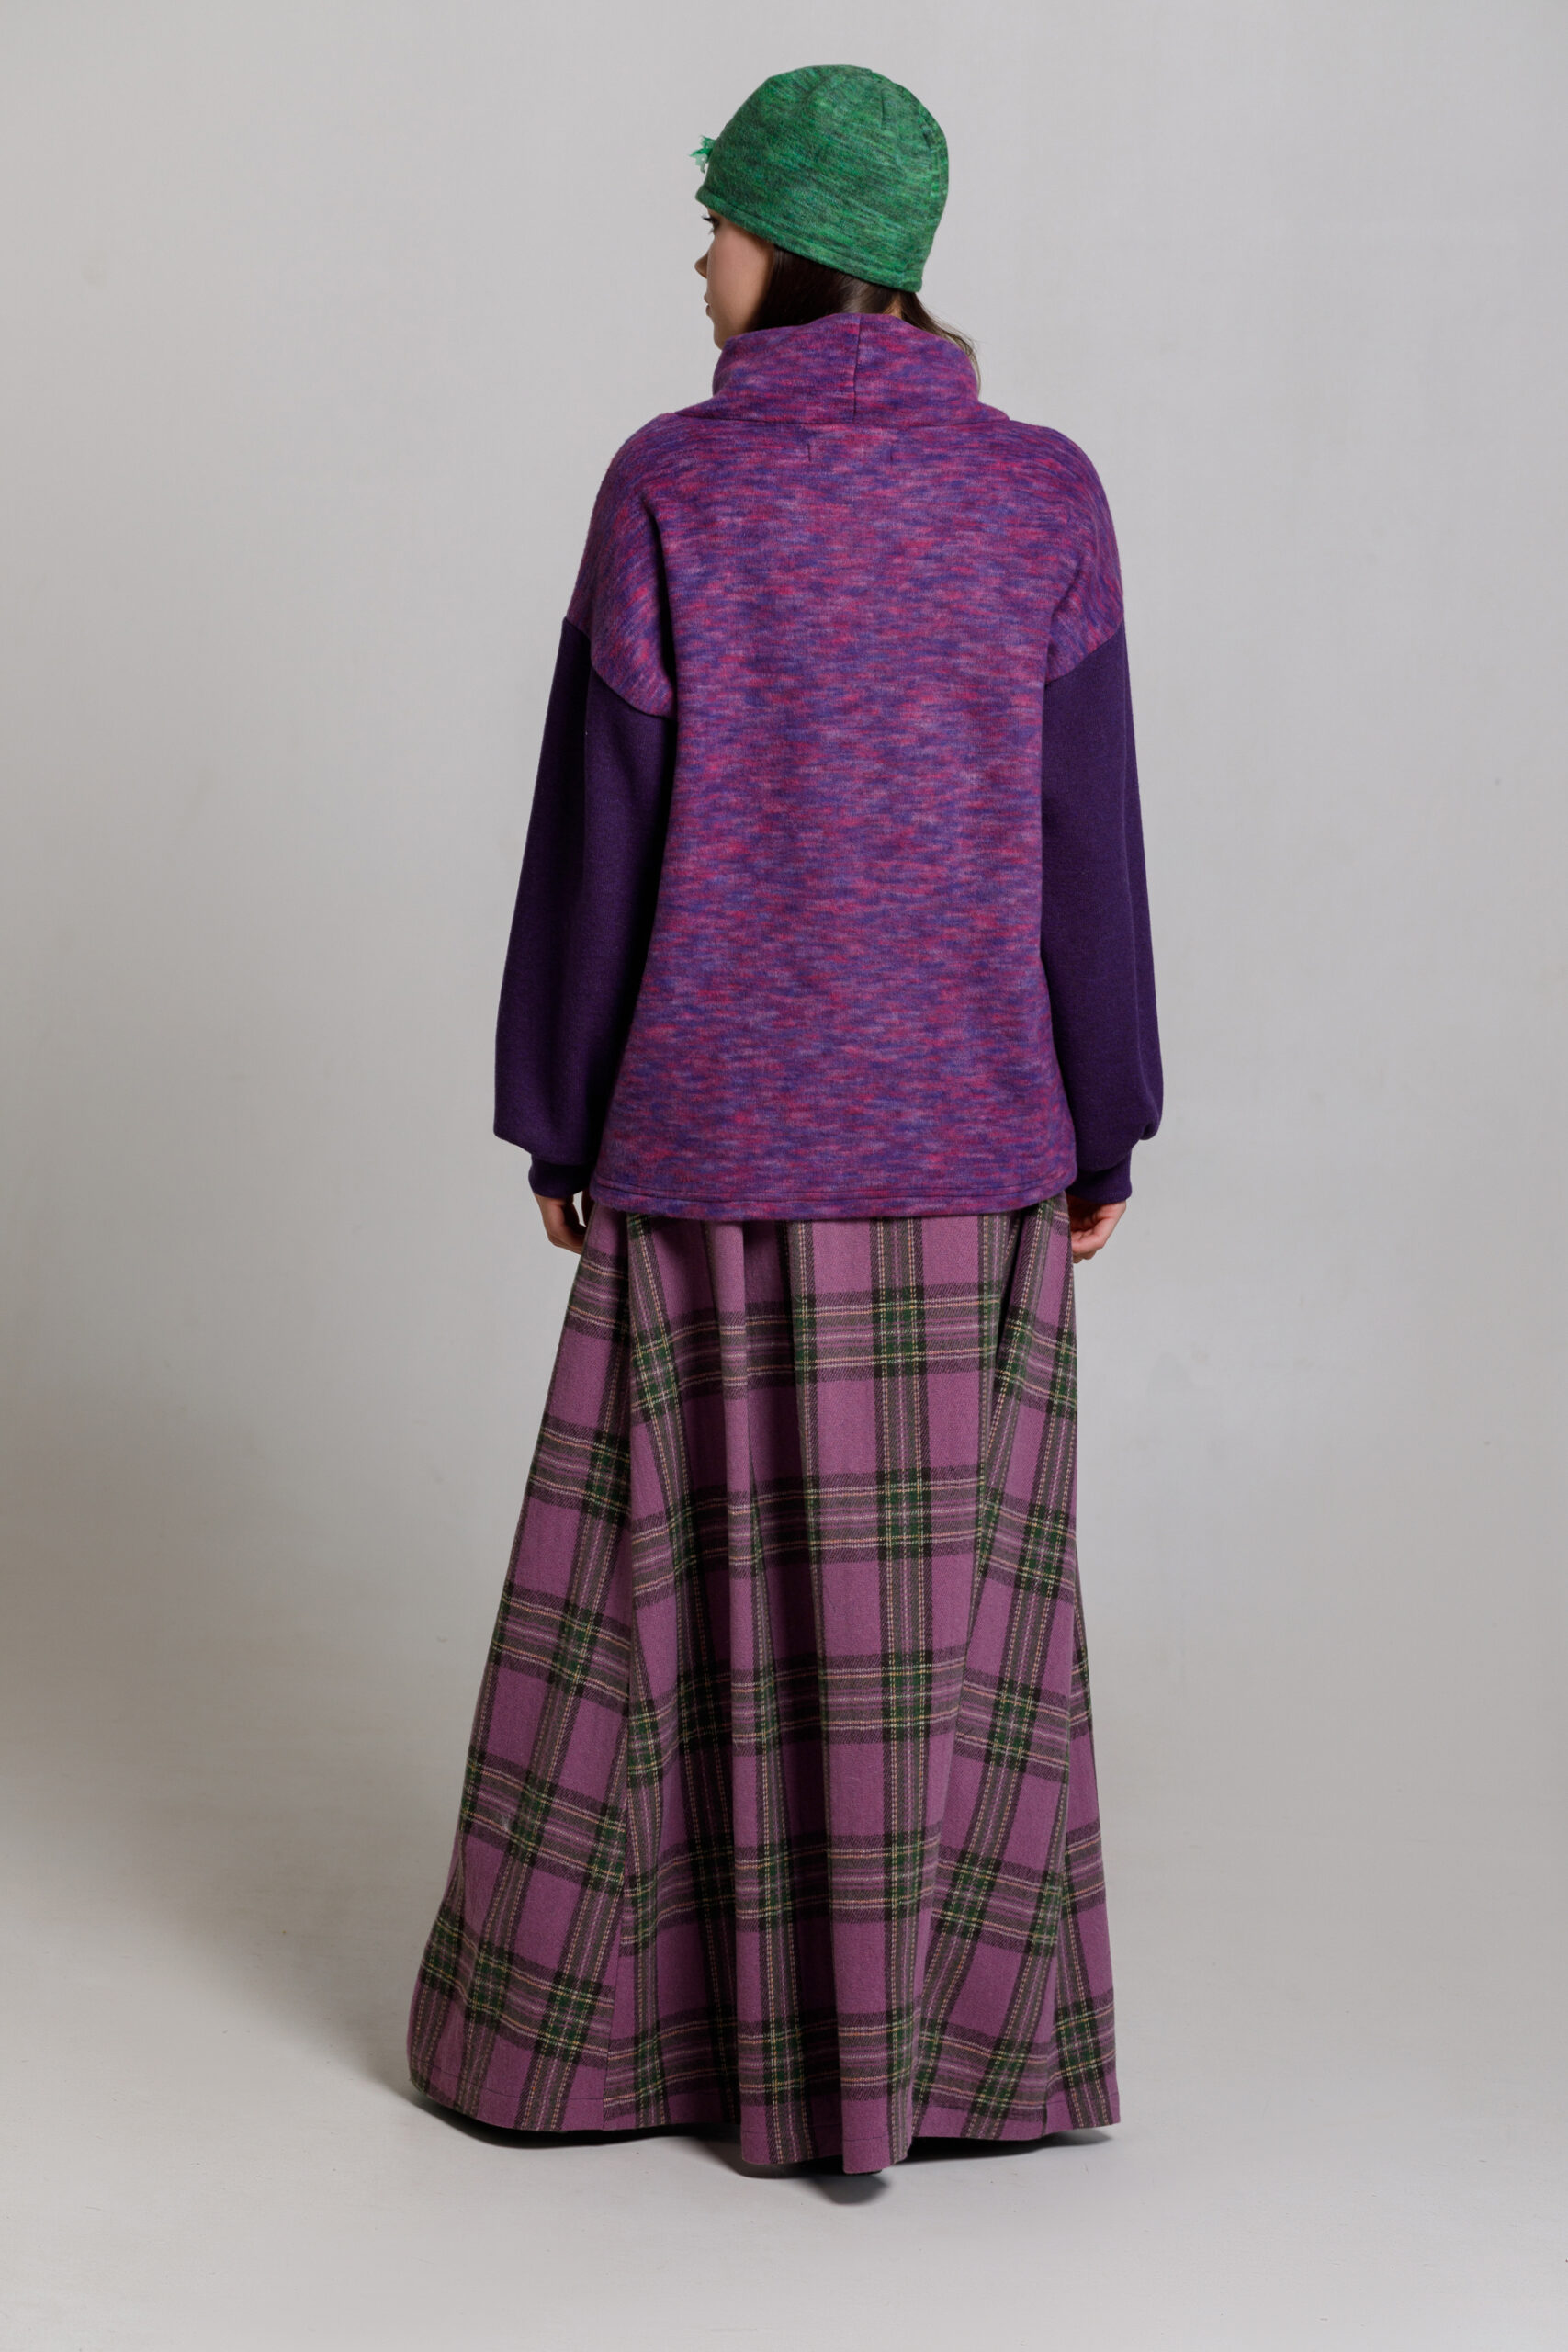 Pulover ADARA cu guler înalt din tricot mov. Materiale naturale, design unicat, cu broderie si aplicatii handmade